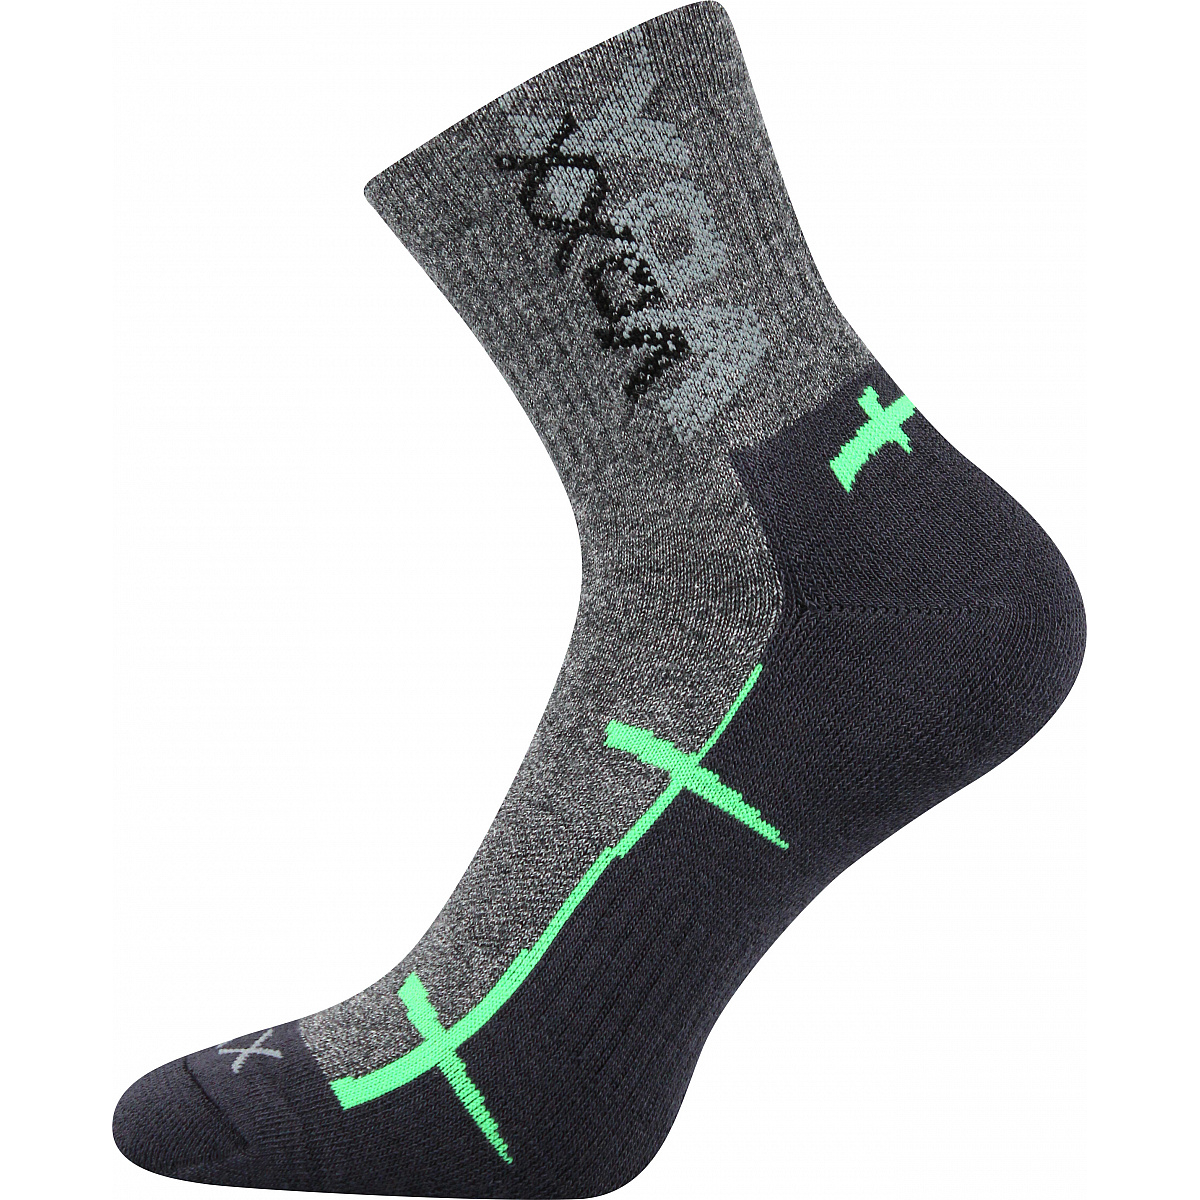 Sportovní ponožky Voxx Walli - šedé-zelené, 43-46